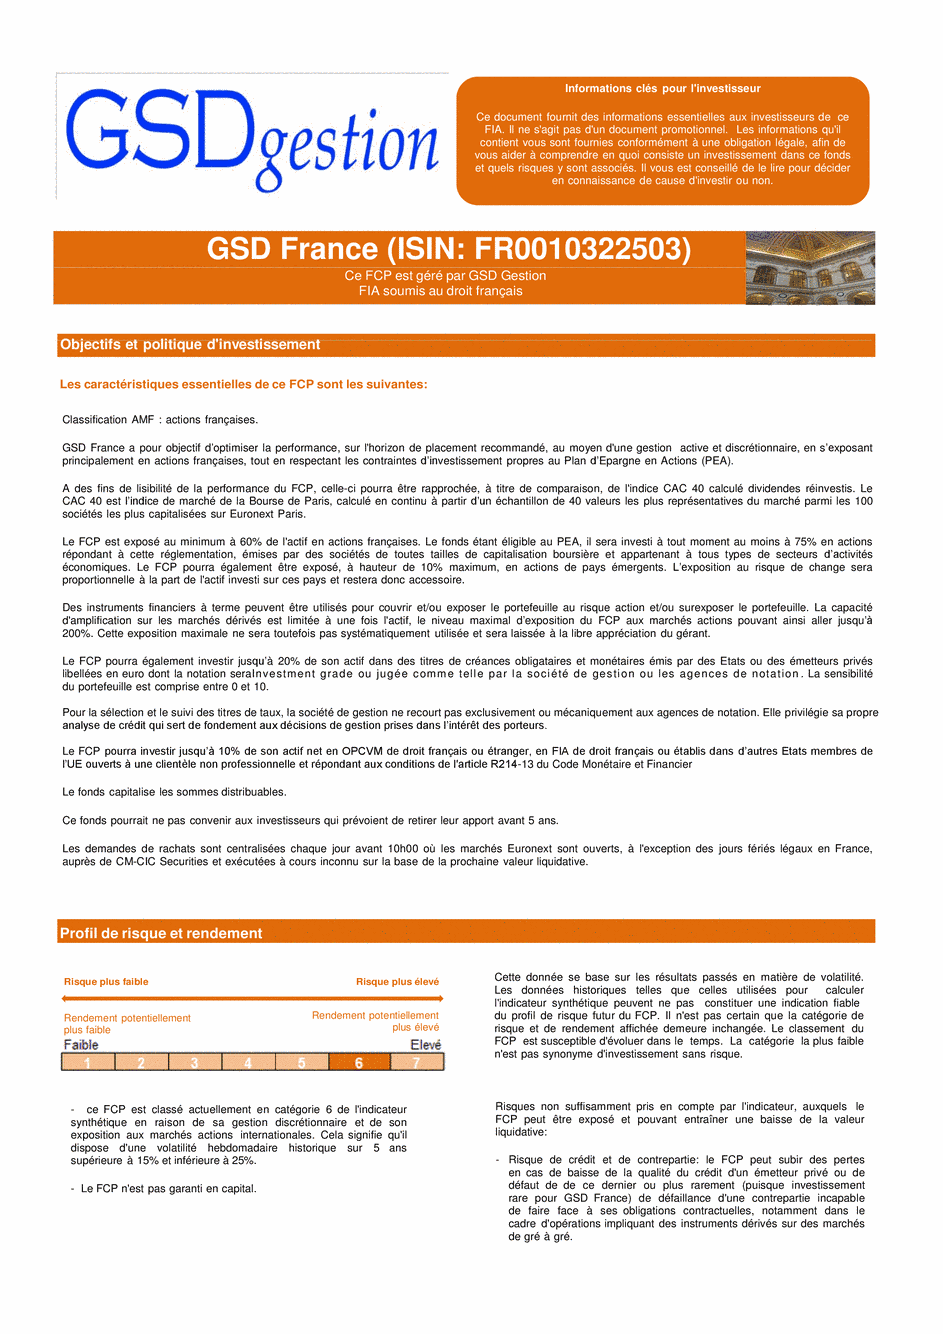 DICI-Prospectus Complet GSD France - 29/04/2015 - Français